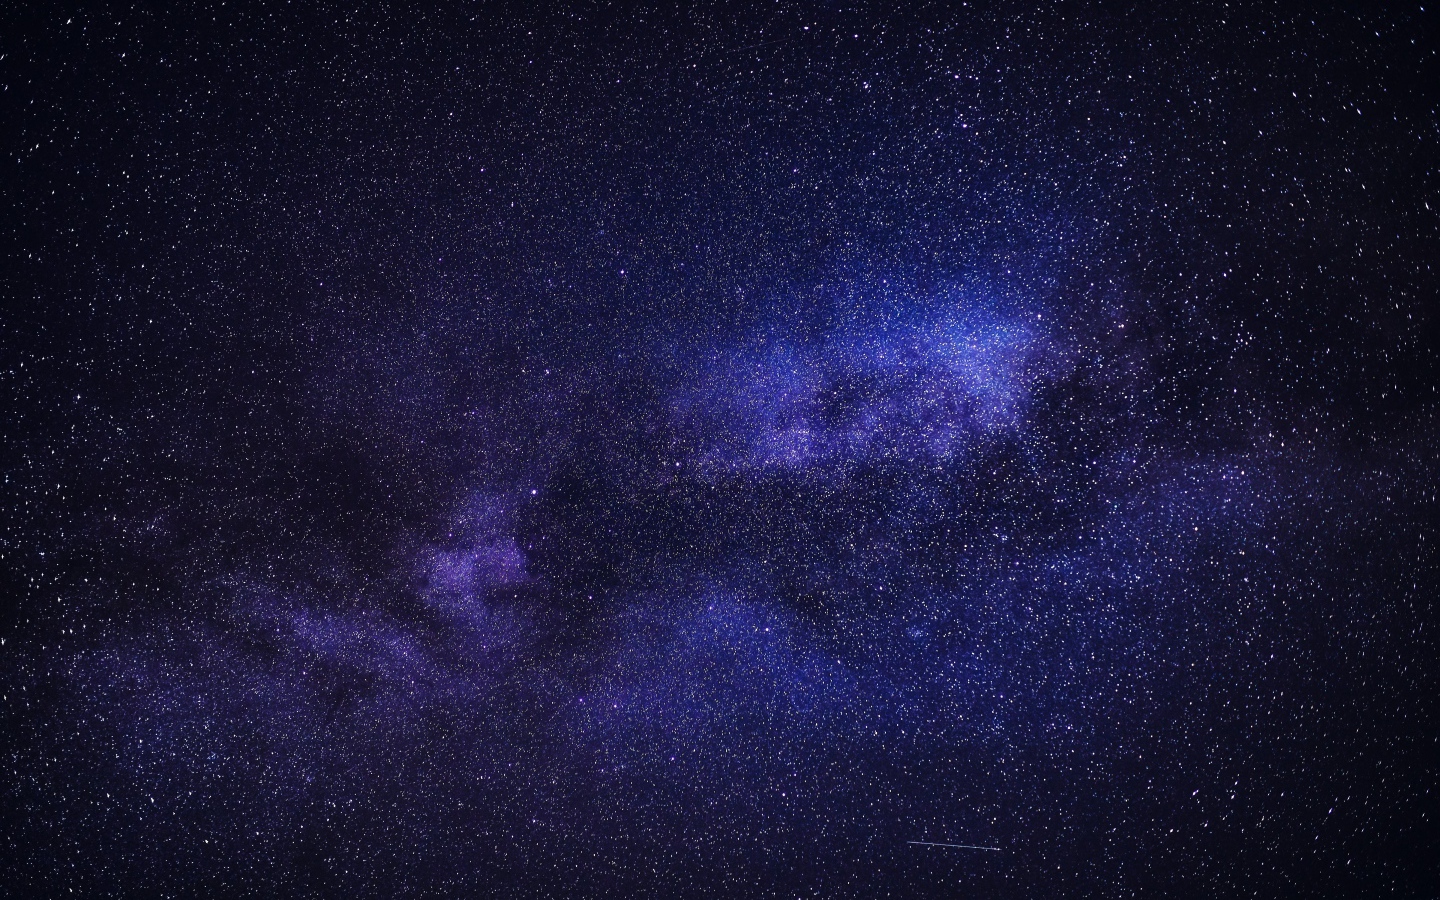 Млечный путь и звезды в синем ночном небе